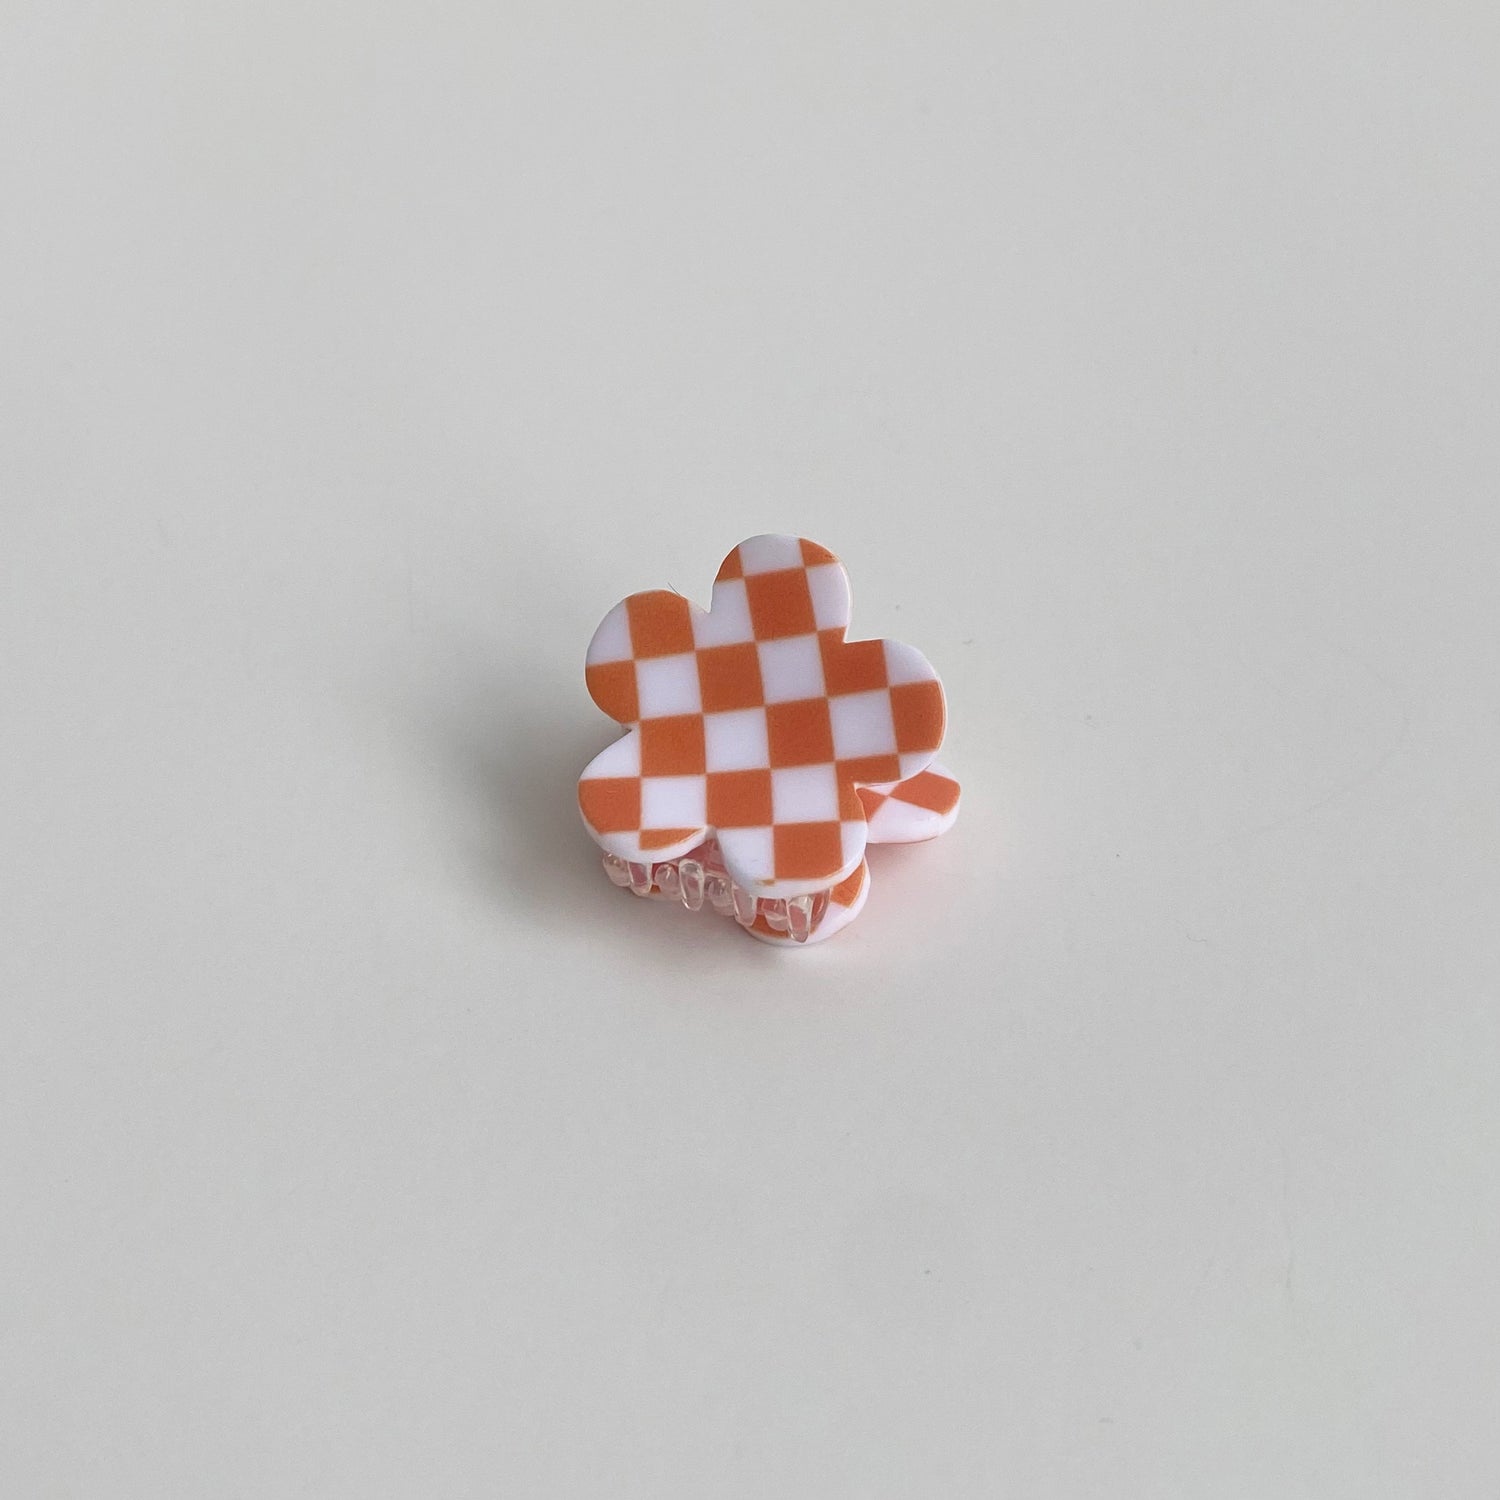 Checkered hair clip in orange checkered flower